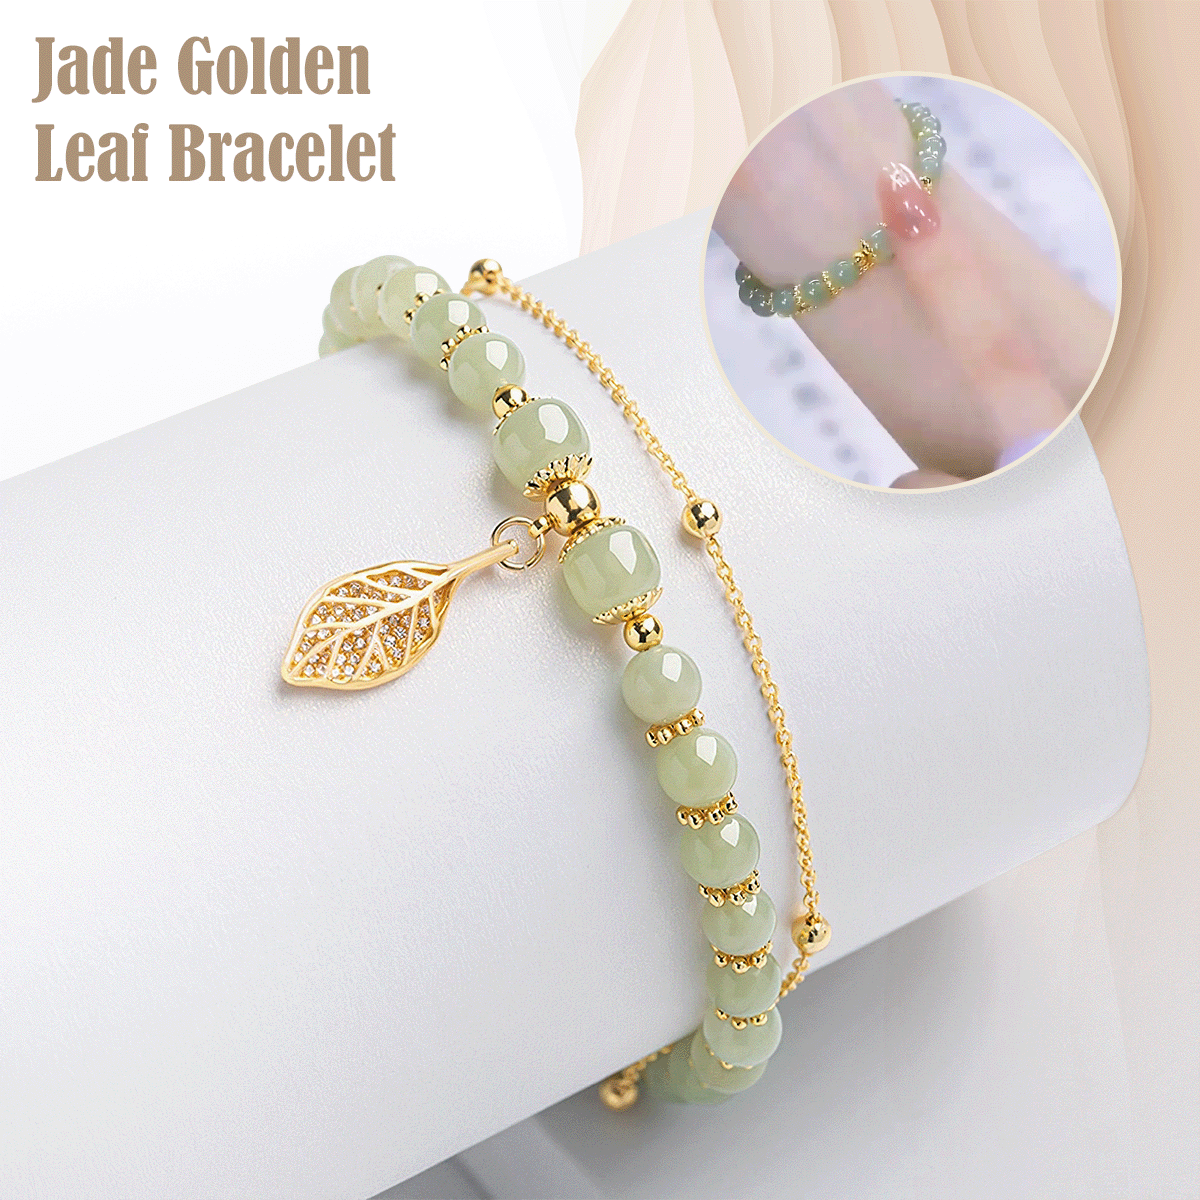 Hetian Jade Golden Leaf Bracelet - Premium